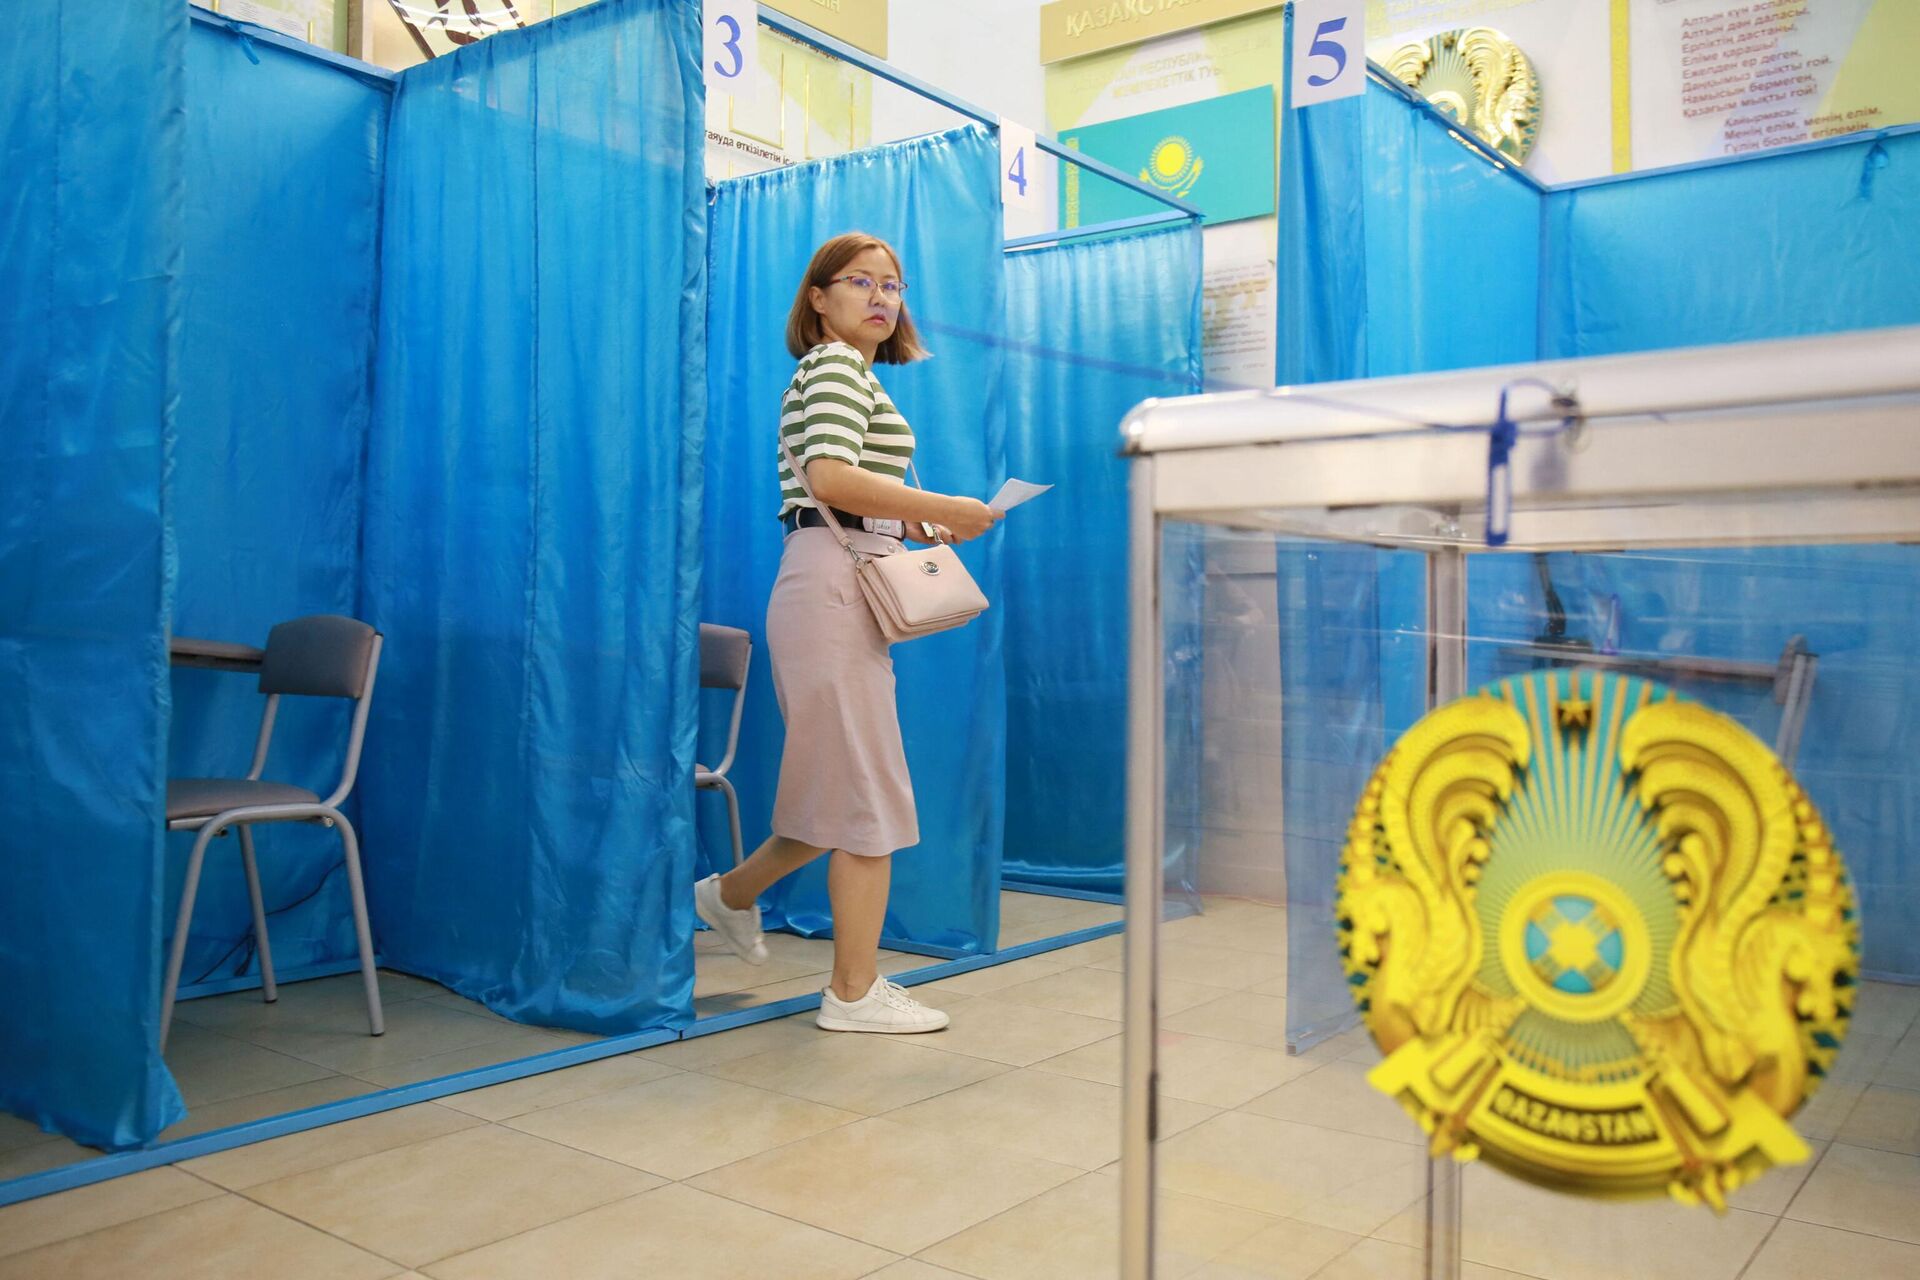 Люди голосуют на республиканском референдуме по внесению изменений и дополнений в конституцию Казахстана - Sputnik Азербайджан, 1920, 05.06.2022